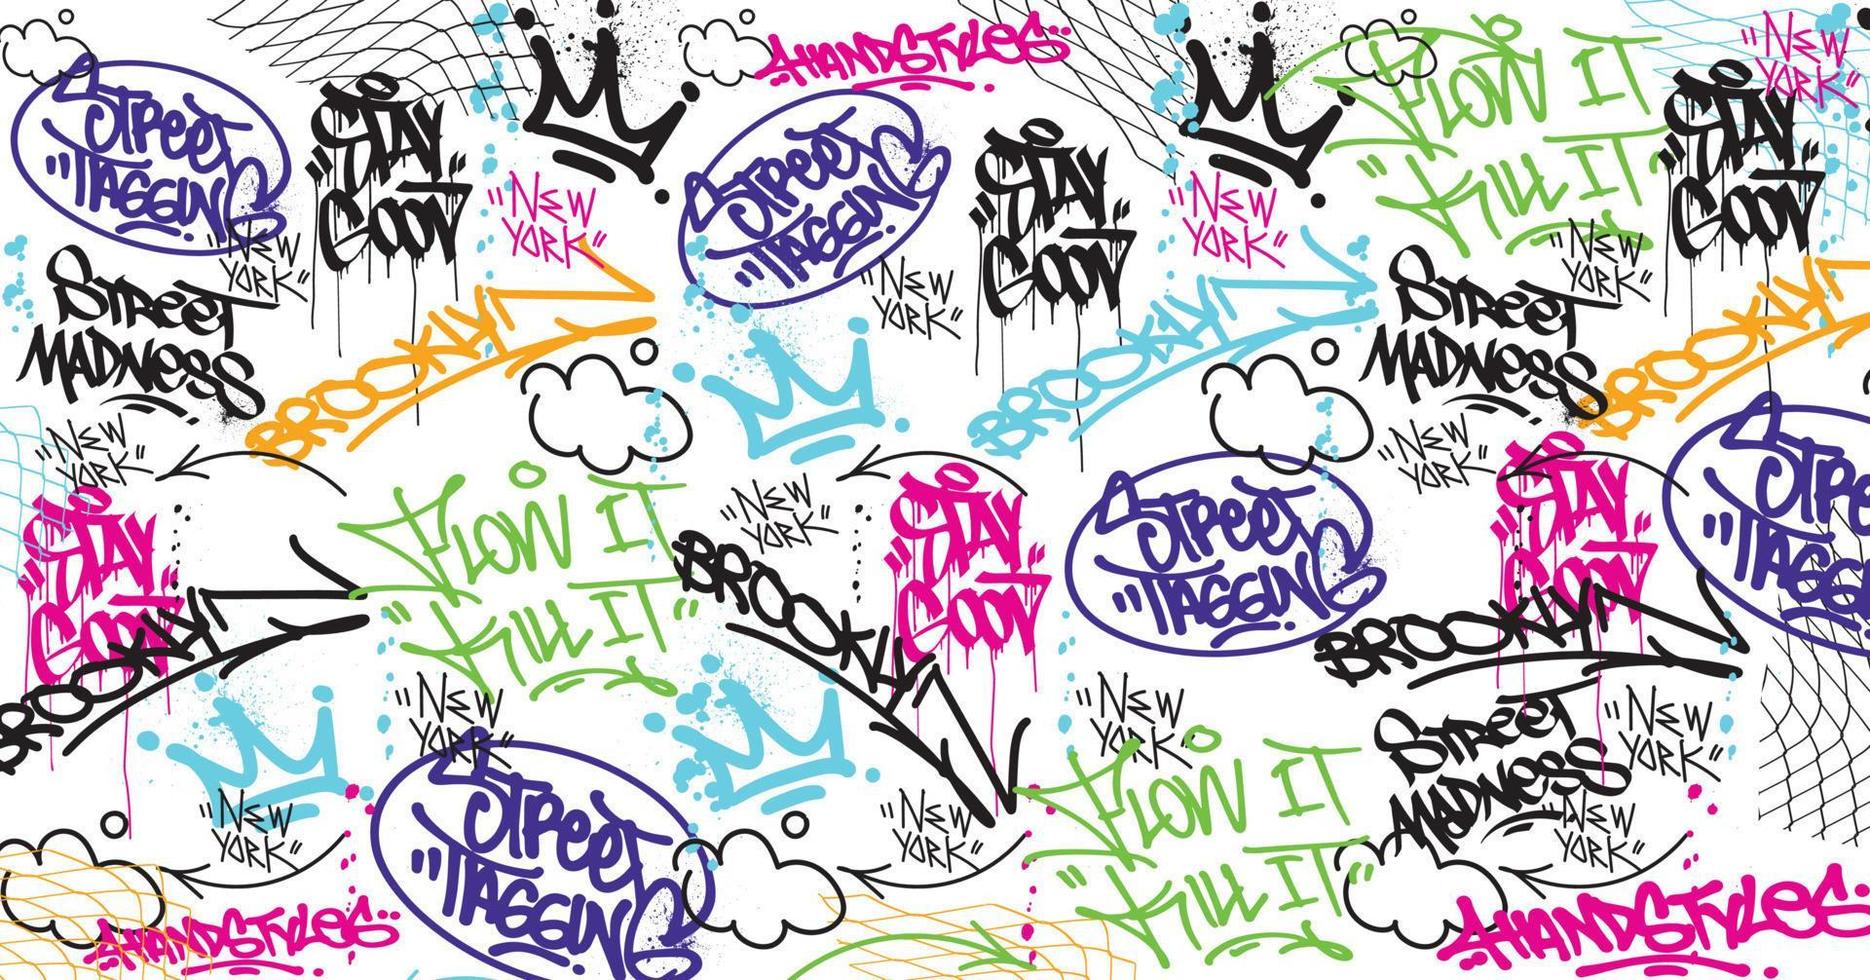 Graffiti-Kunsthintergrund mit Scribble Throw-up und Tagging im handgezeichneten Stil. Street Art Graffiti Urban Theme für Drucke, Muster, Banner und Textilien im Vektorformat vektor